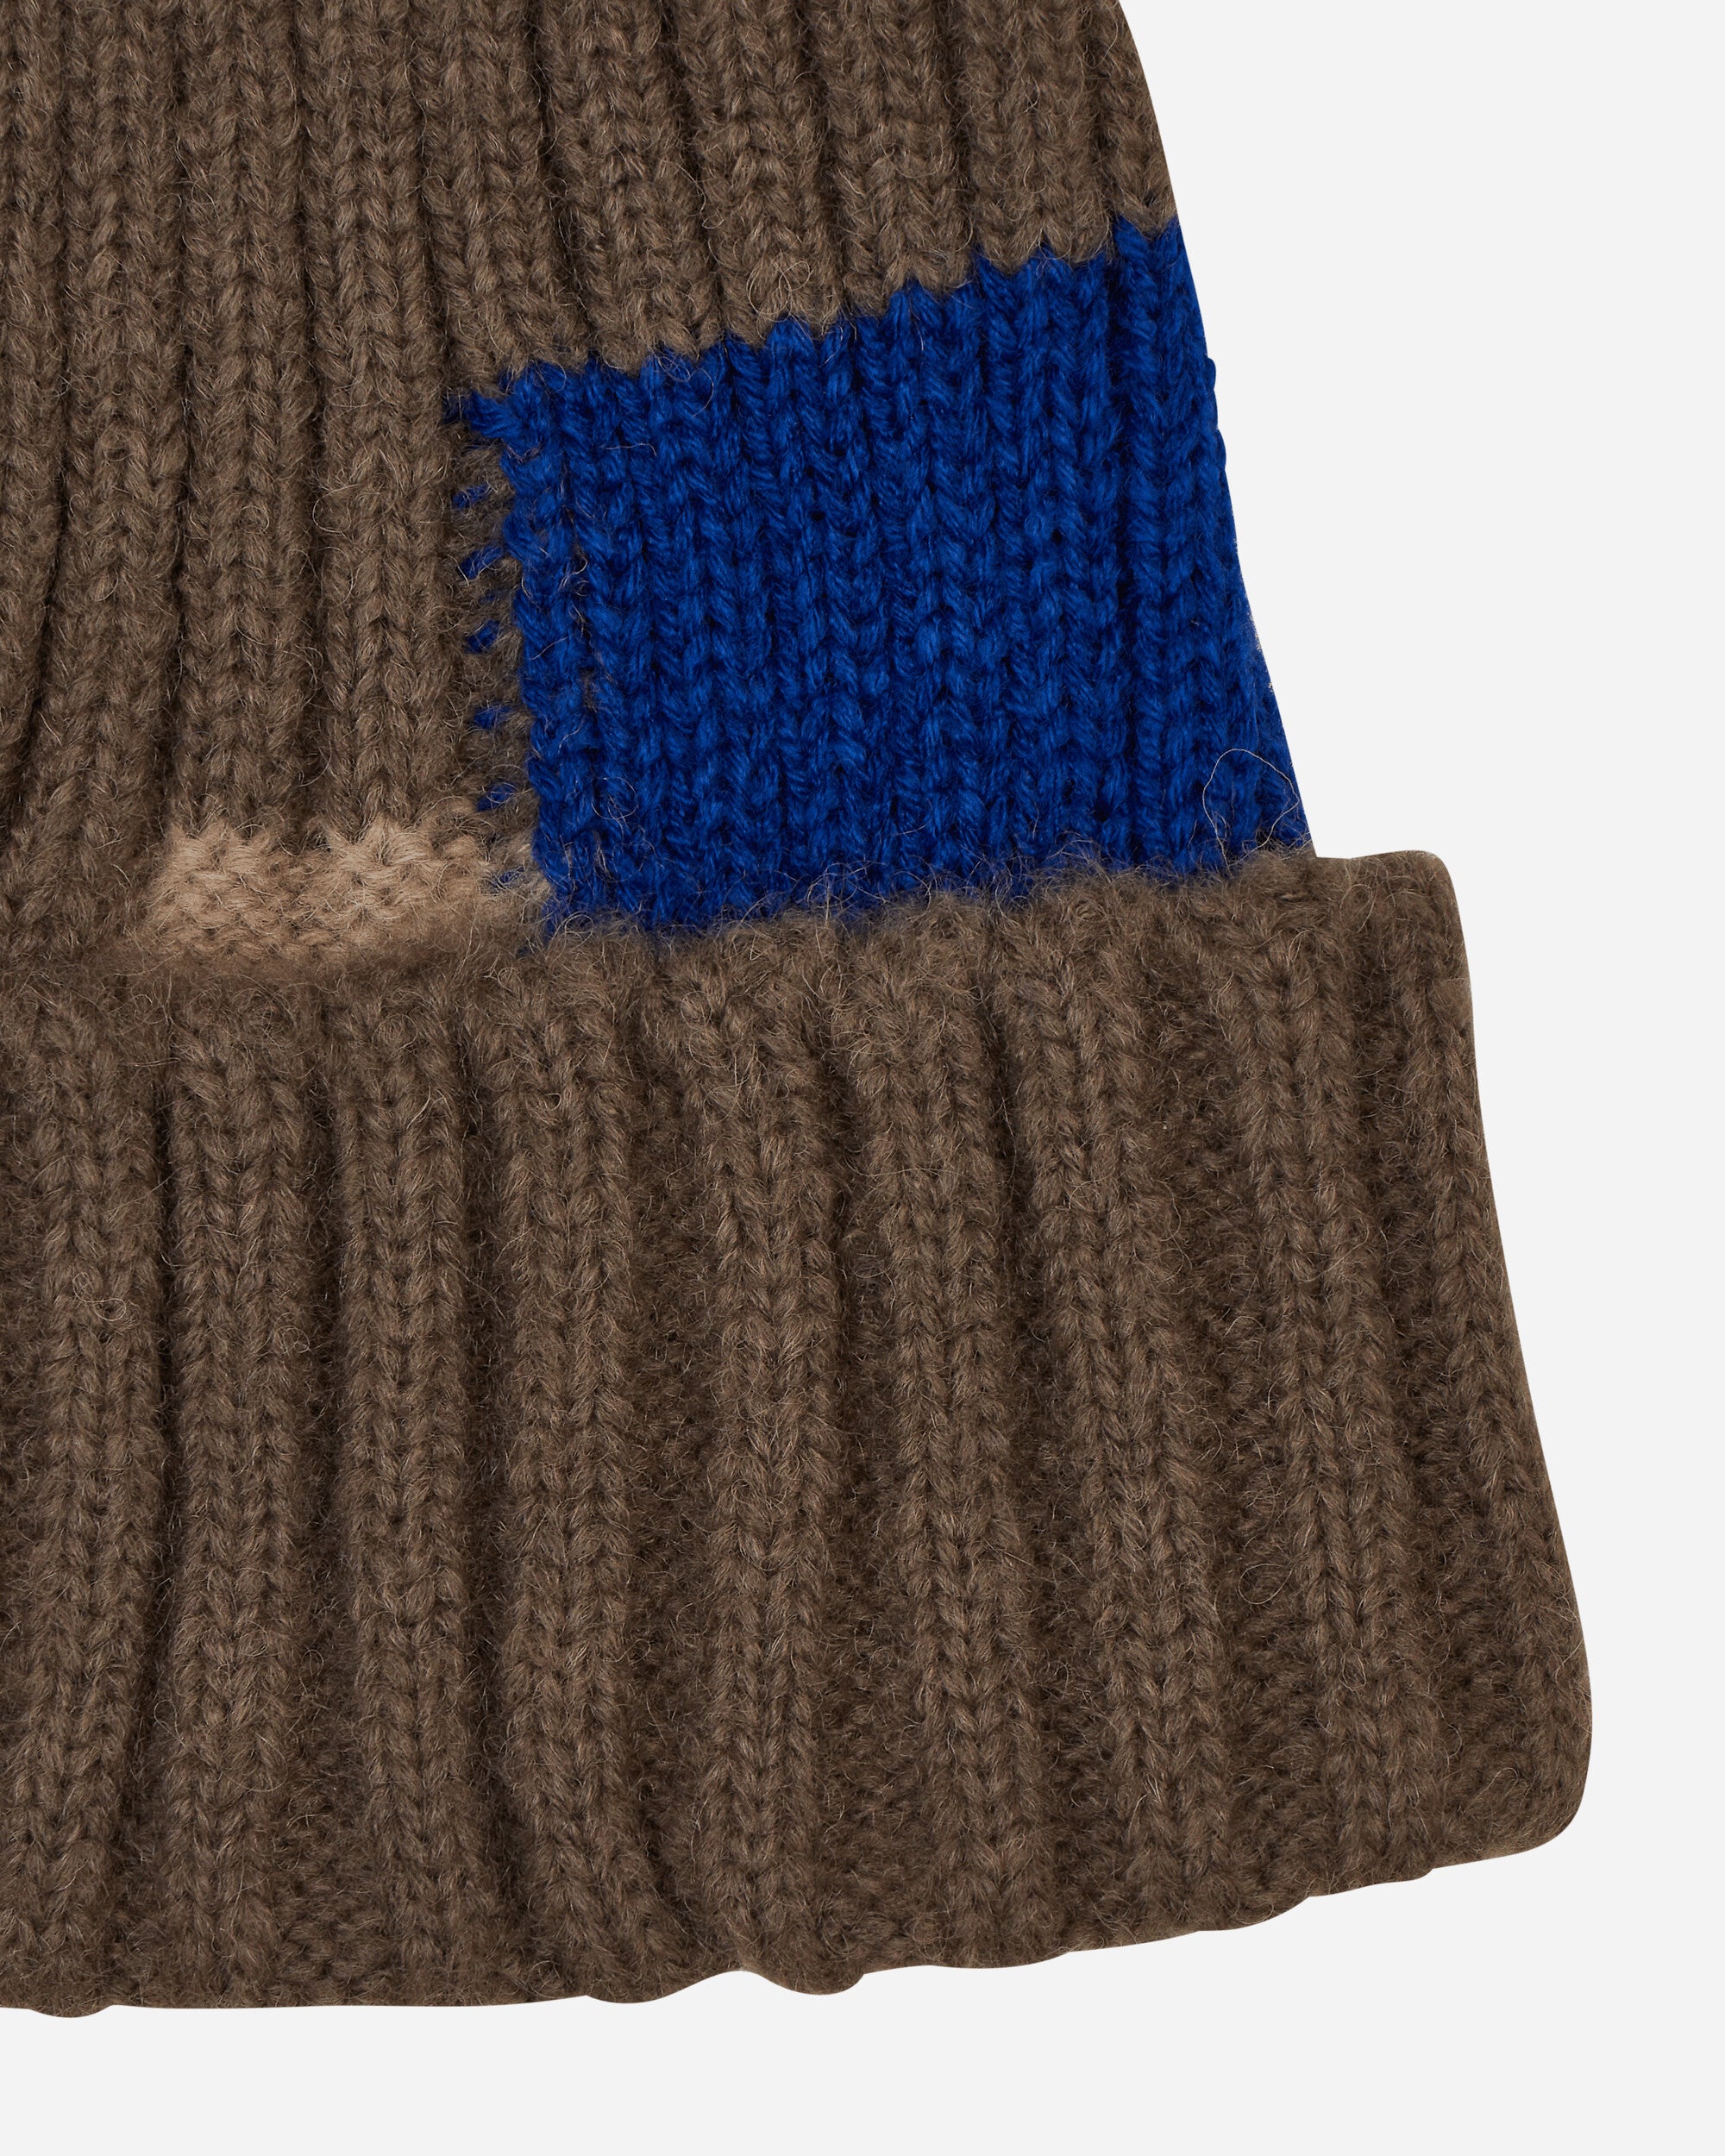 KAPITAL 5G Wool Tugihagi Knit Cap Gray Hats Beanies EK-1510 2